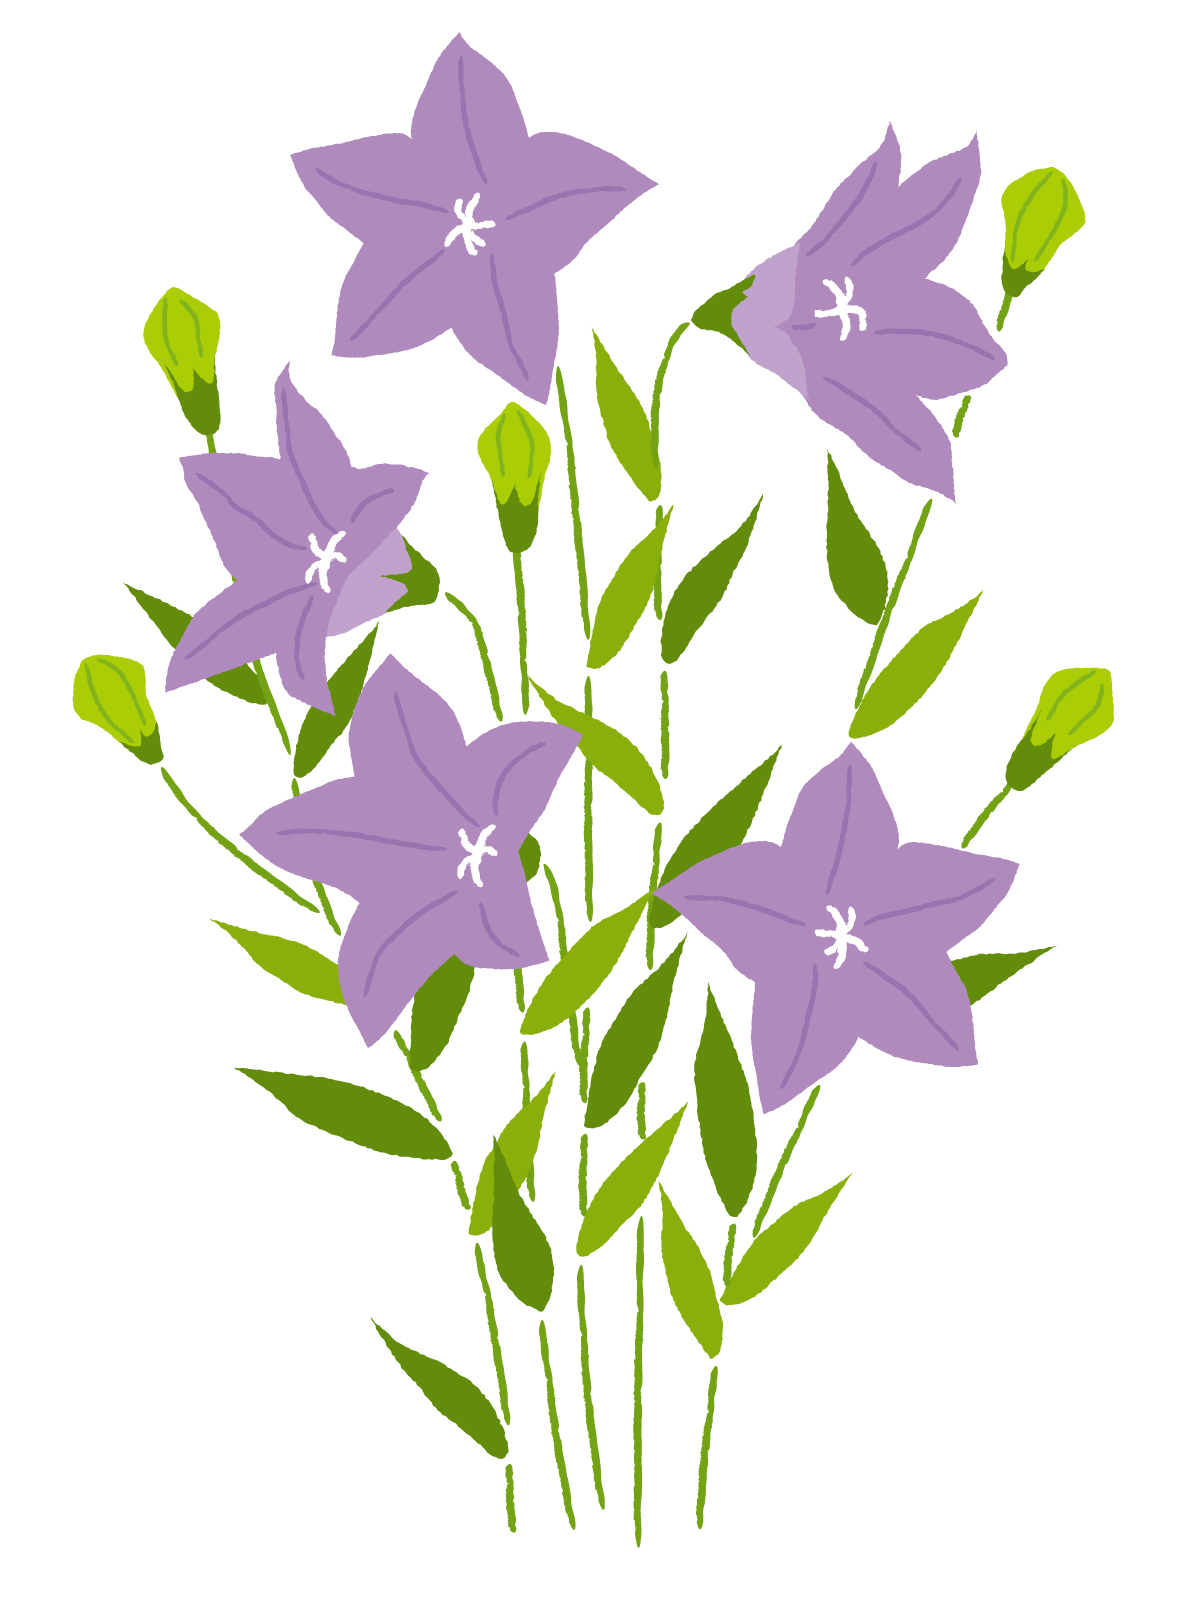 9月1日誕生花を工作 桔梗 キキョウ 花言葉 折り紙 描き方japanese Bellflower 介護士しげゆきブログ